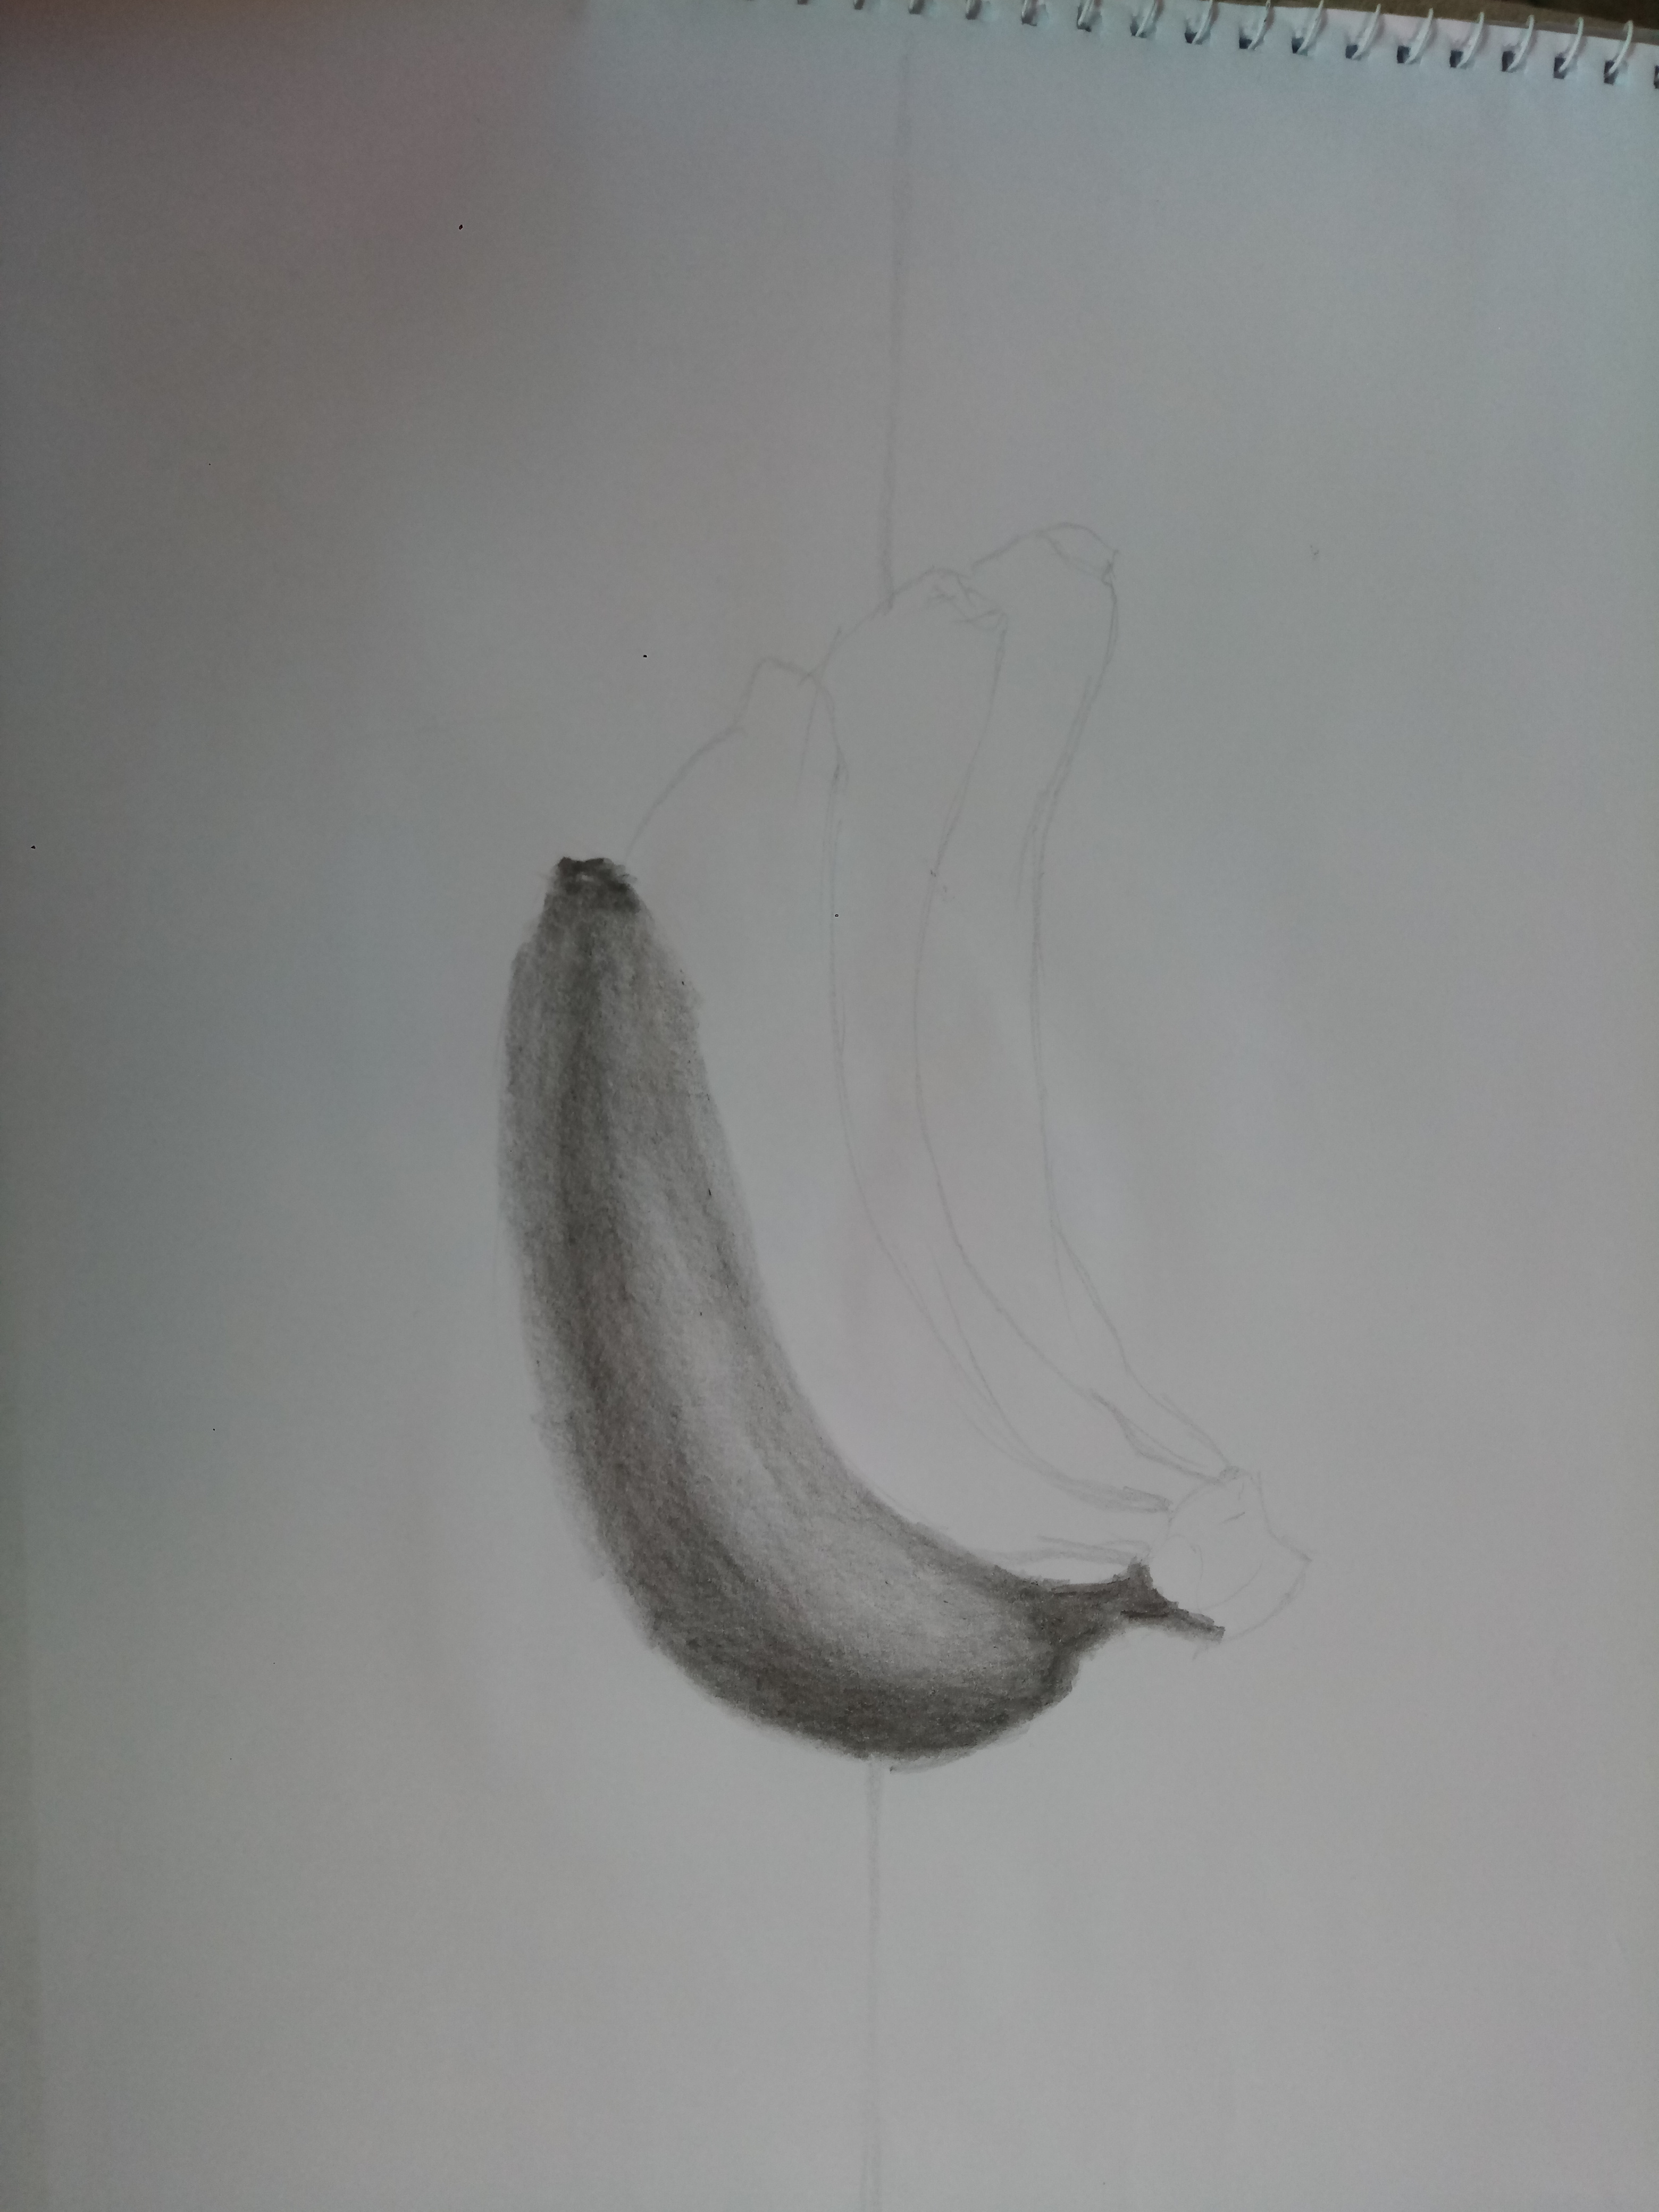 Pencil drawing of a ripe banana on Craiyon